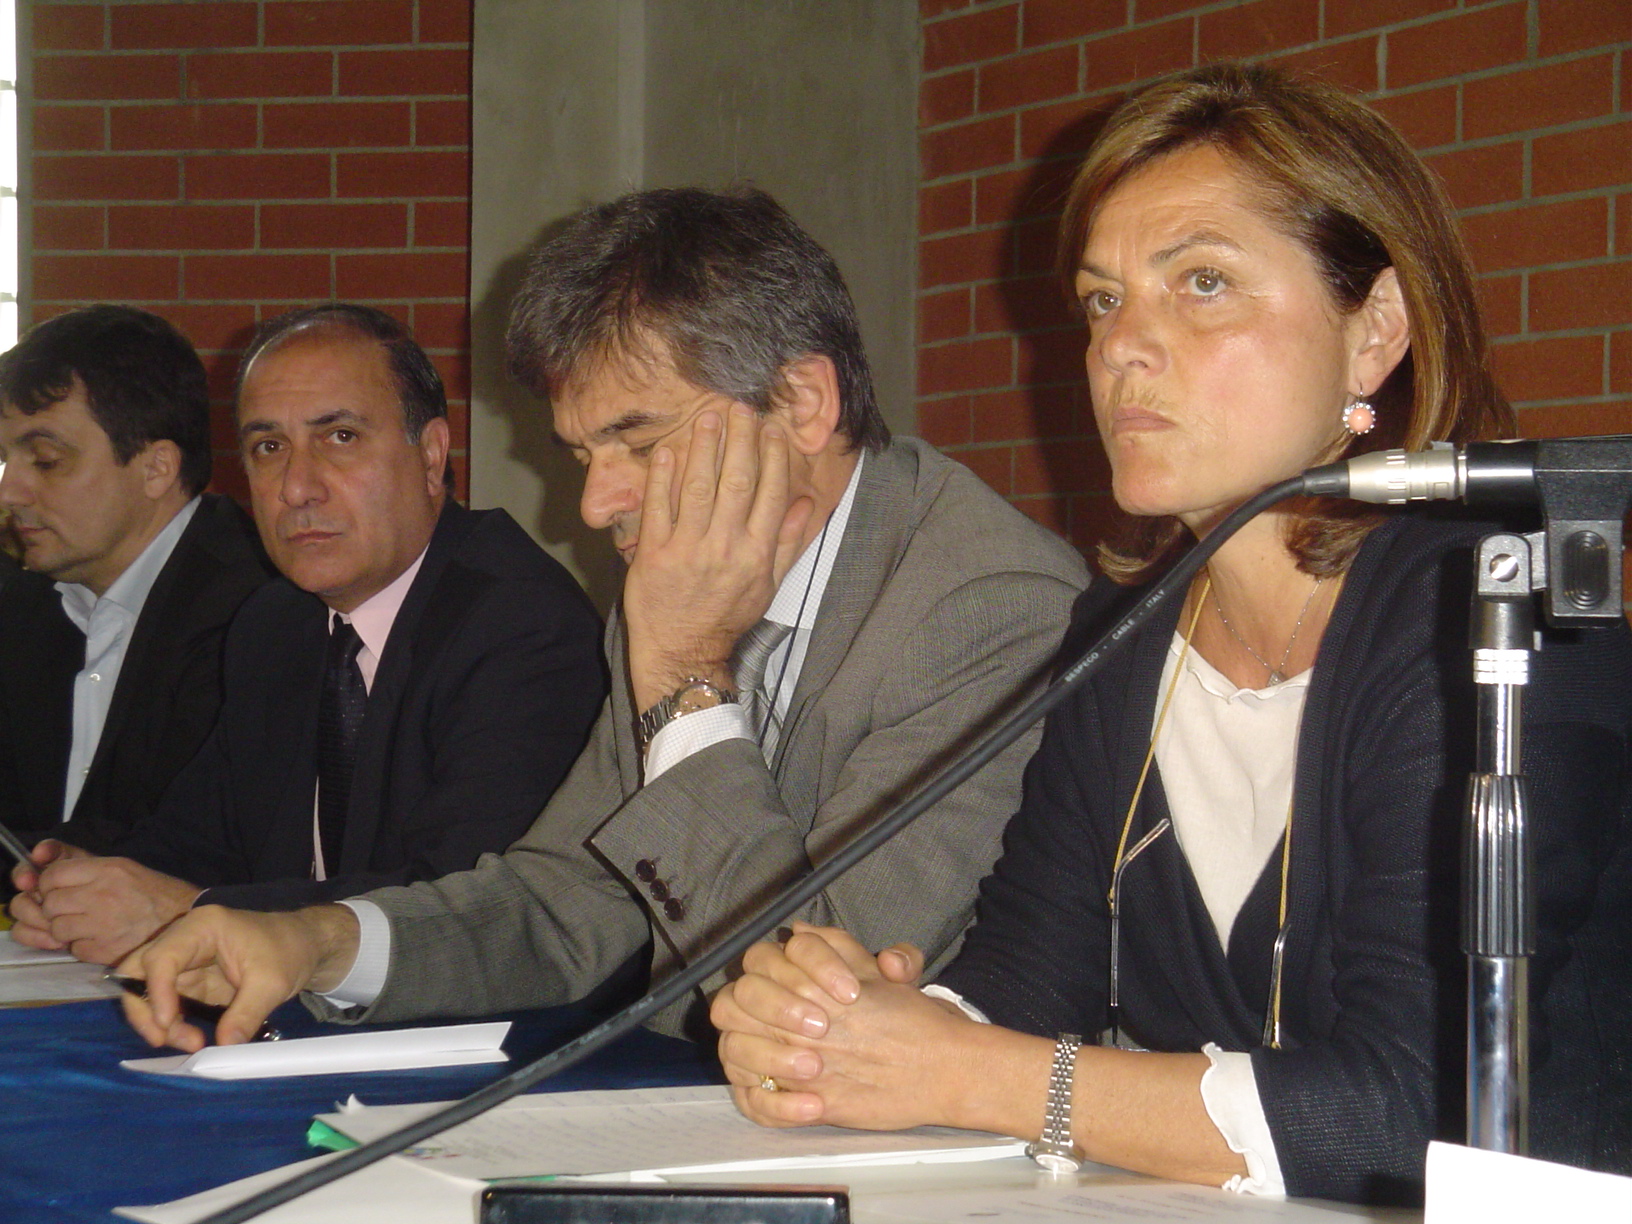 Da destra Maria Pia Brunato, Sergio Chiamparino, Domenico Gallo nella casa circondariale Lorusso e Cutugno 